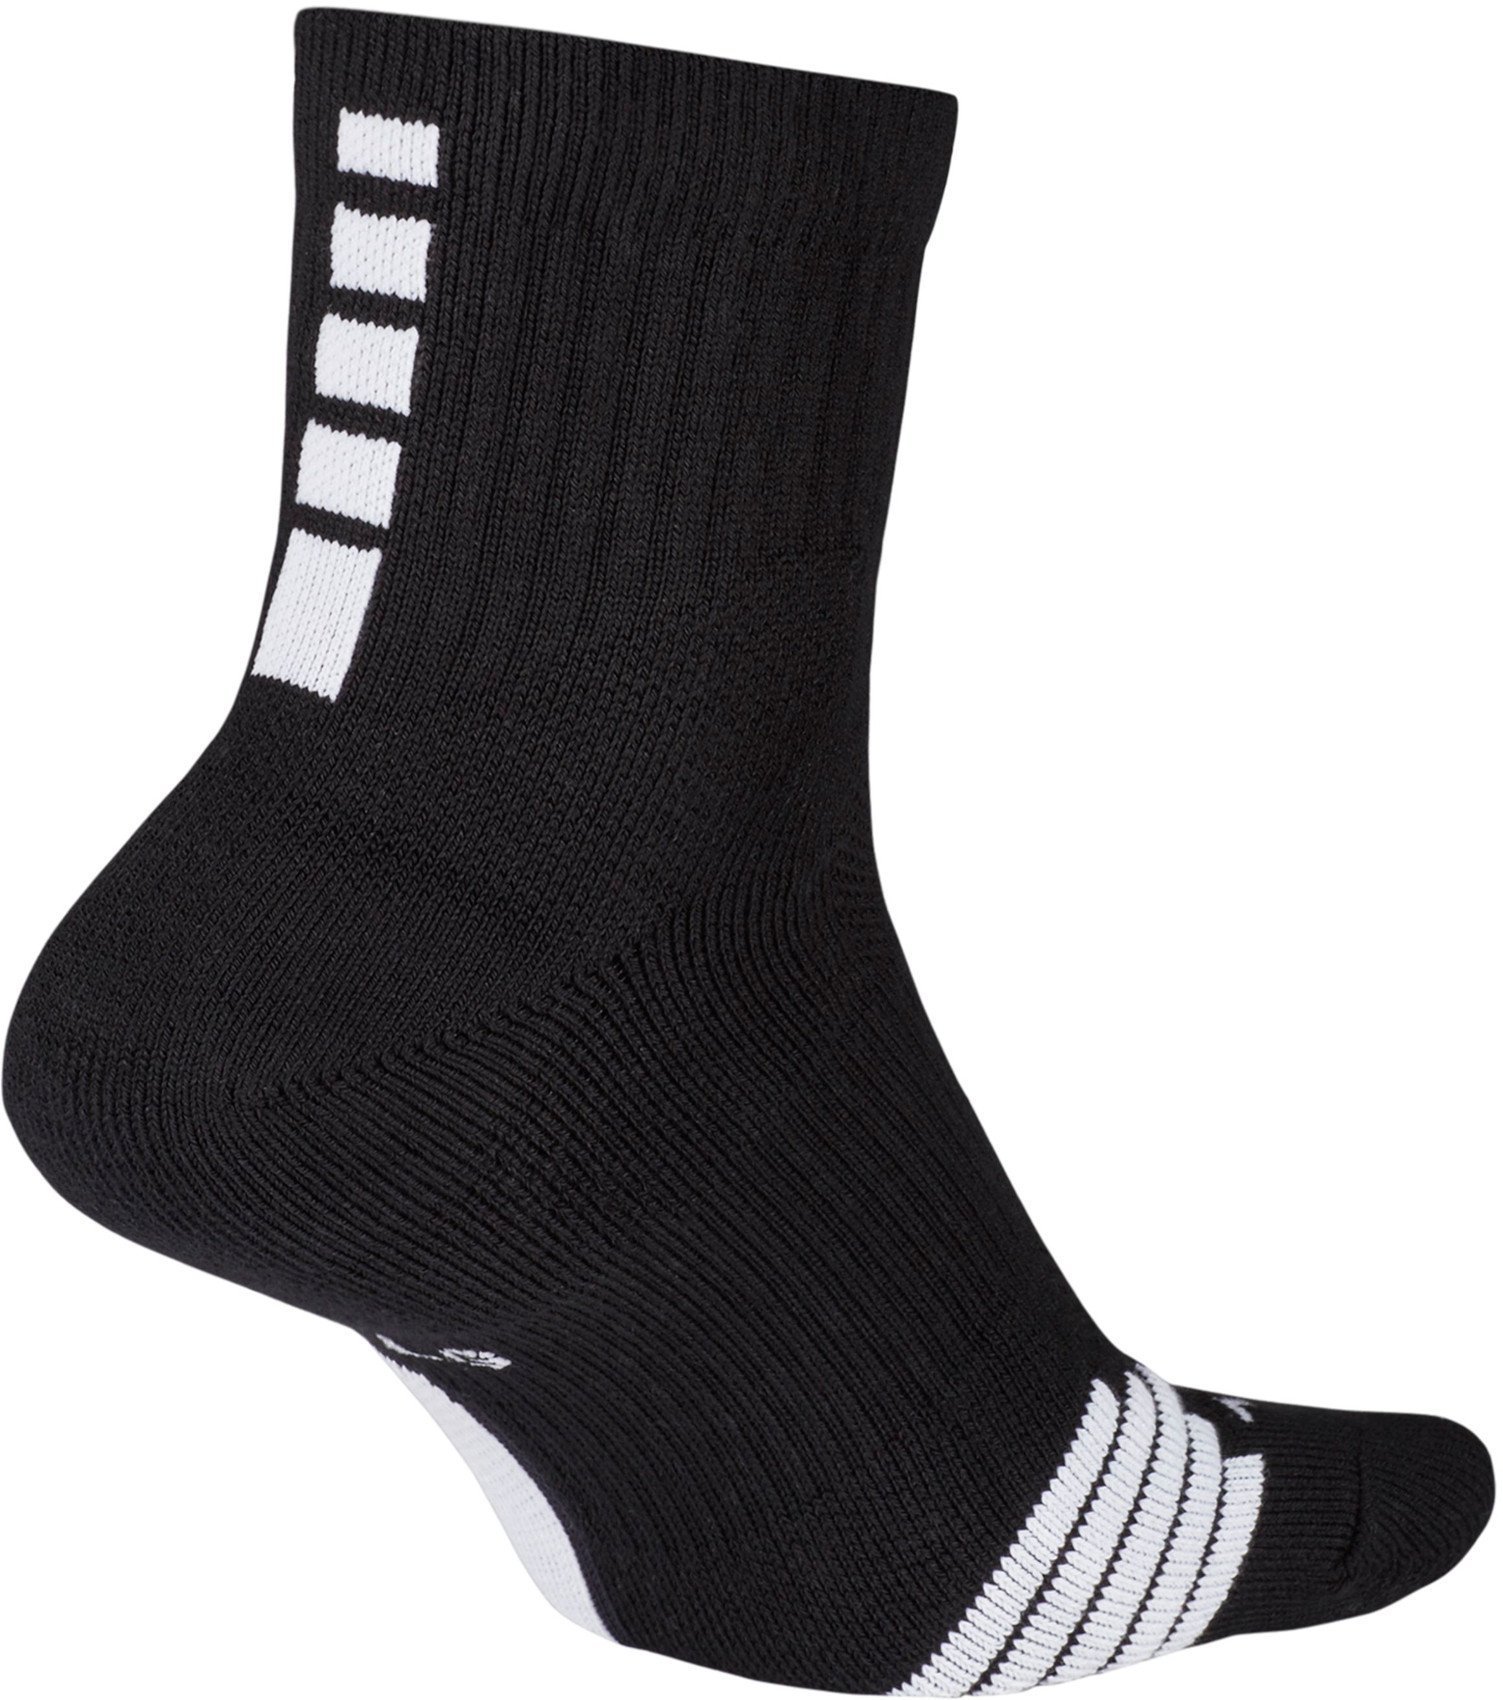 Nike Elite Mid Basketball Ankle Socks